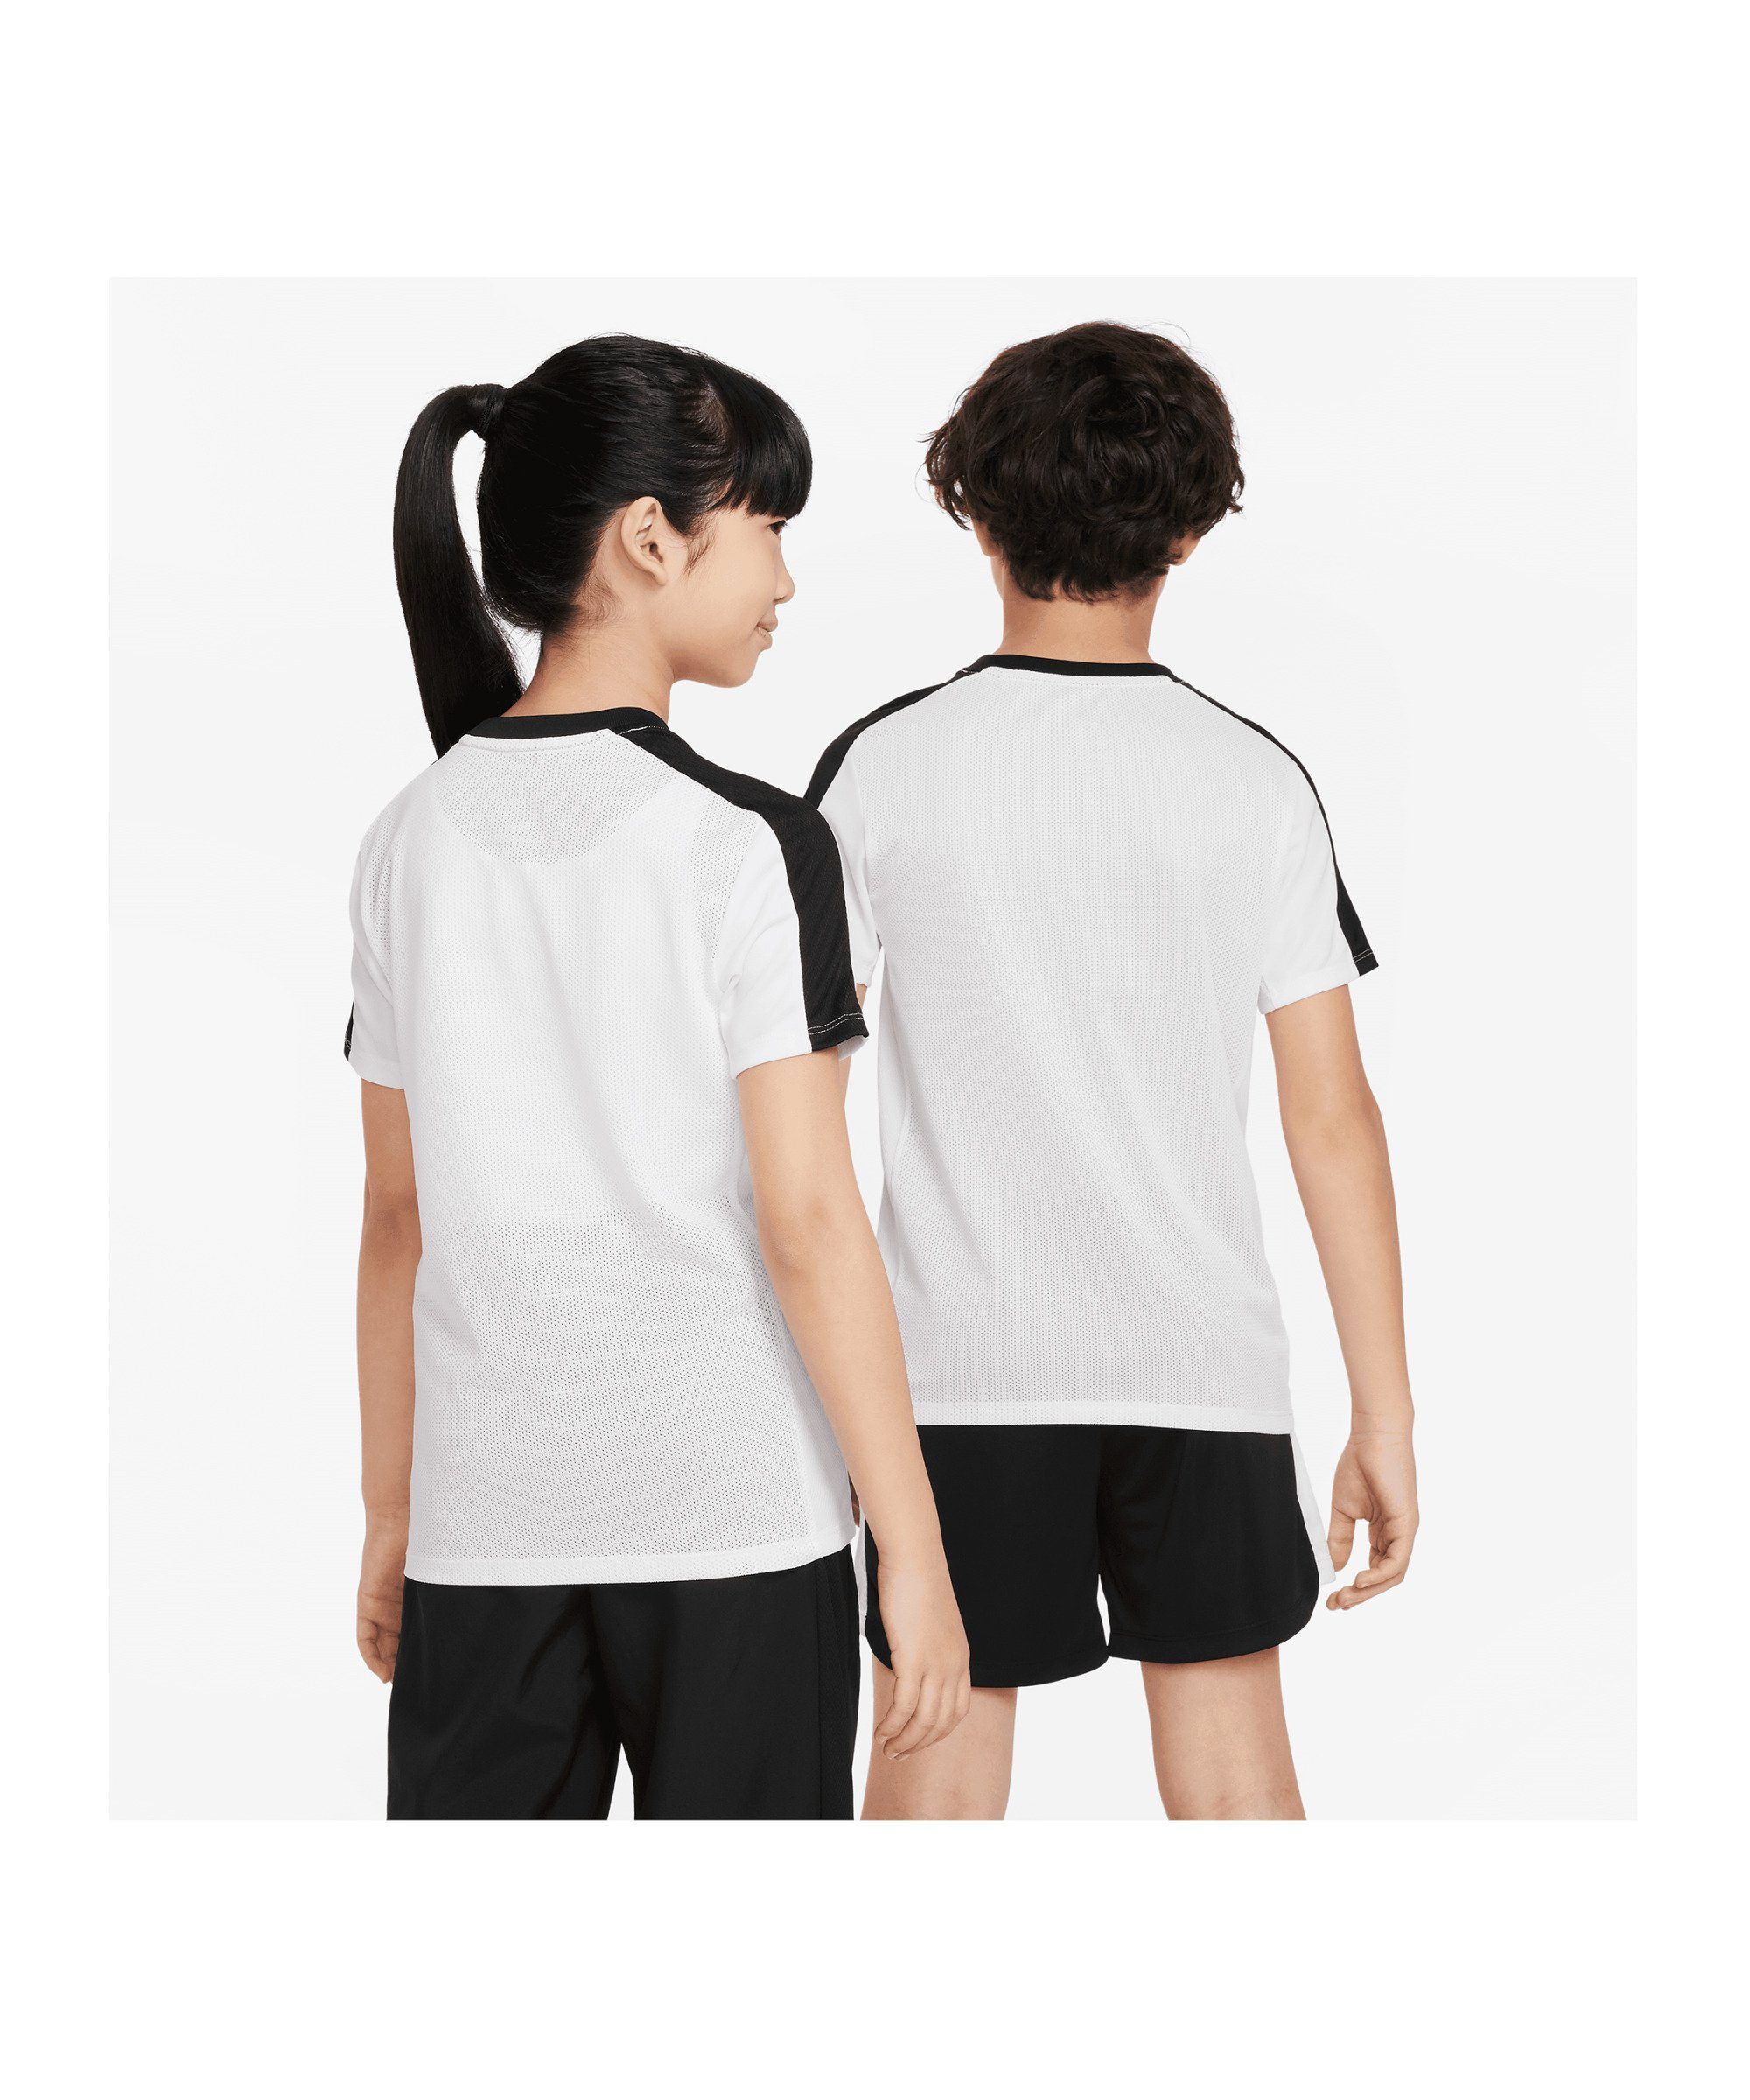 Nike T-Shirt 23 weissschwarzrot Academy default T-Shirt